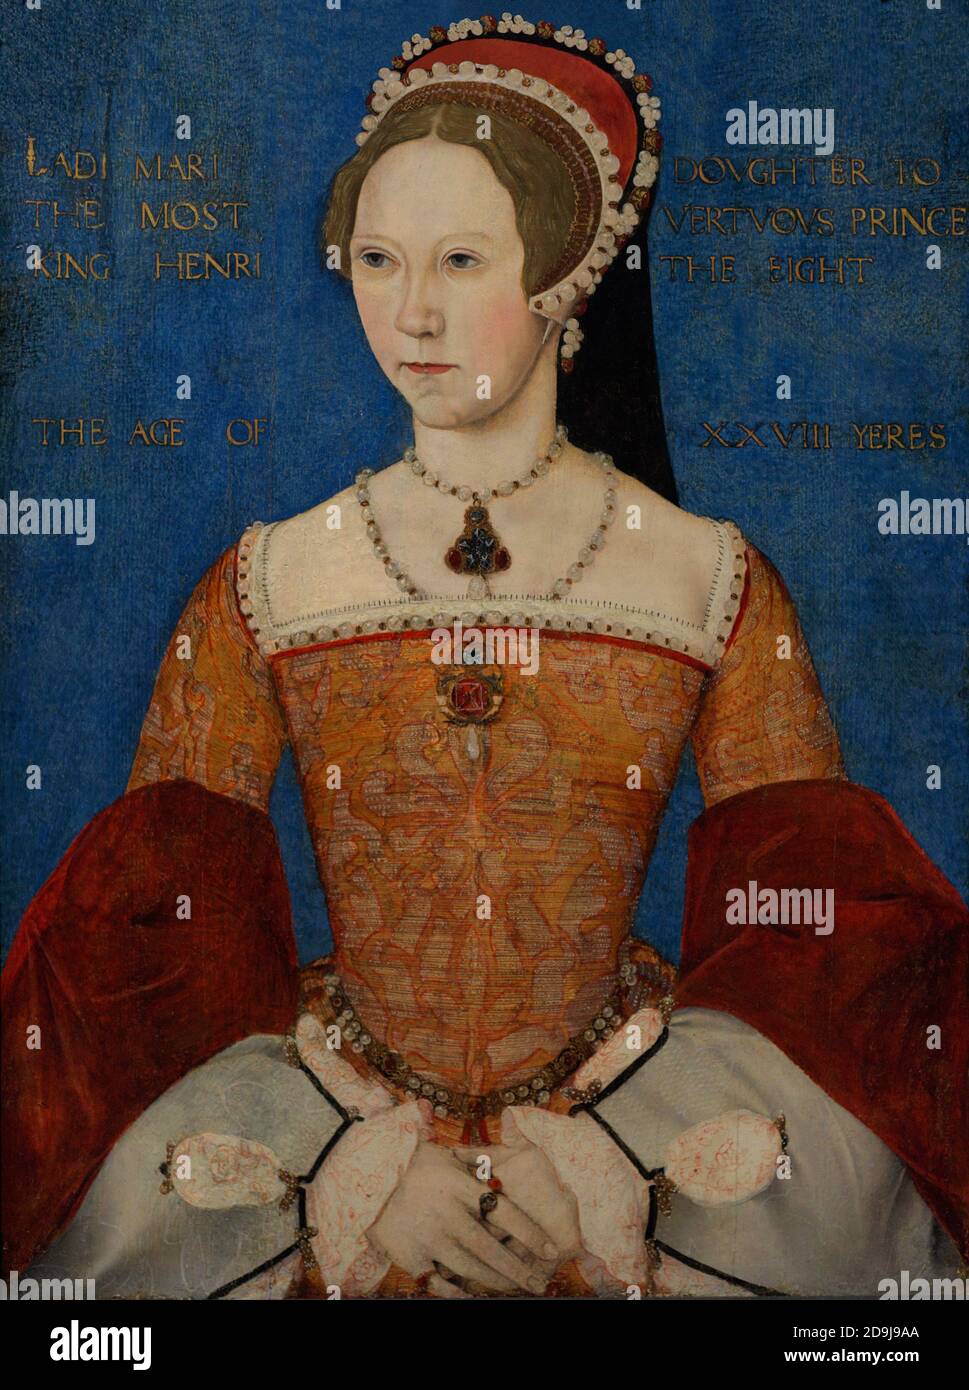 Königin Maria I. von England (1516-1558). Englands erste weibliche Monarchin. Porträt von Meister John. Öl auf Platte, 1544. National Portrait Gallery. London, England, Vereinigtes Königreich. Stockfoto